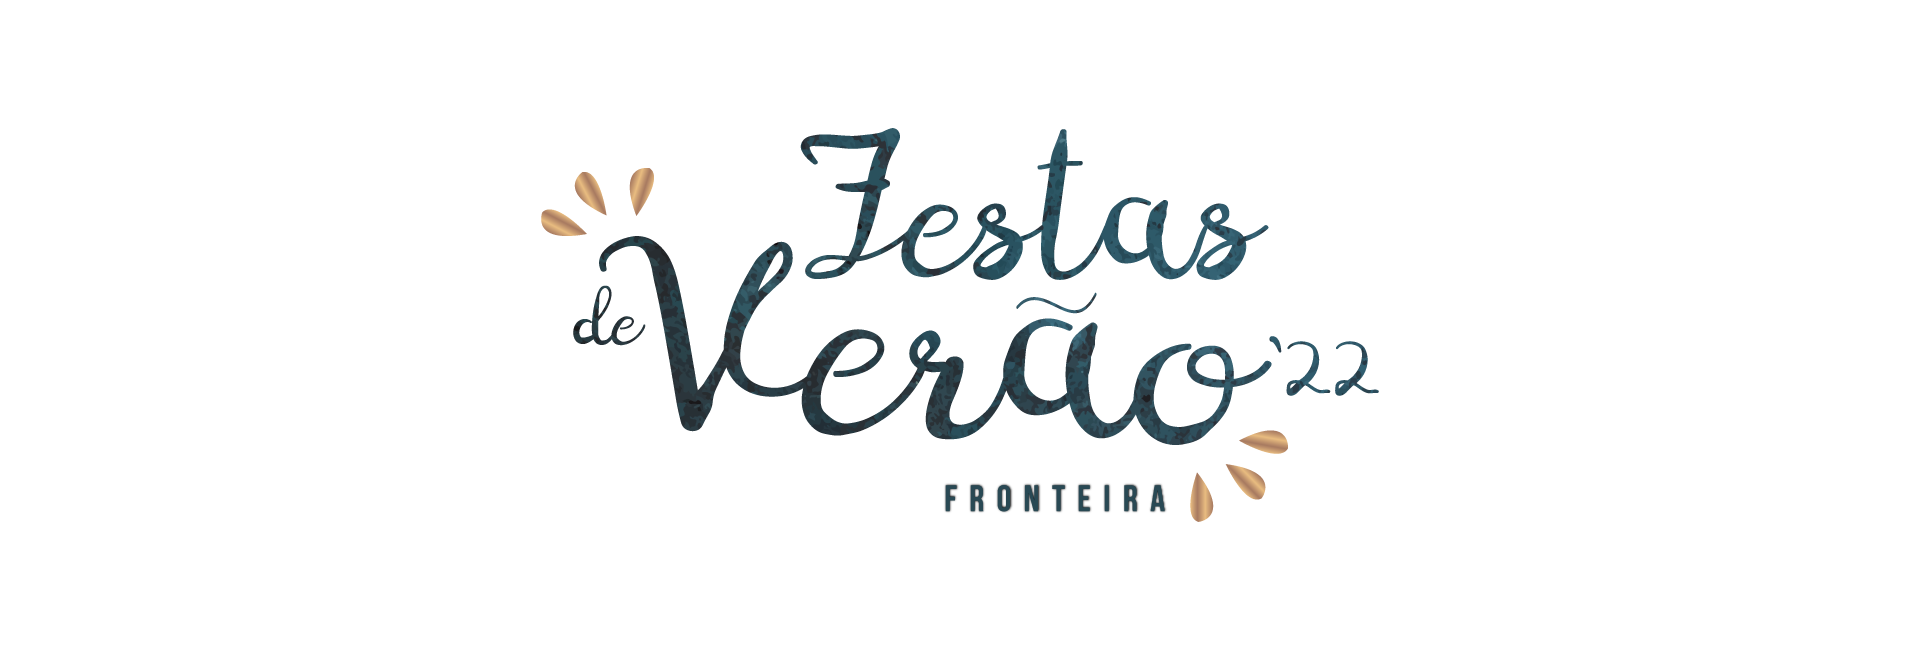 (Português) Festas de Verão de Fronteira